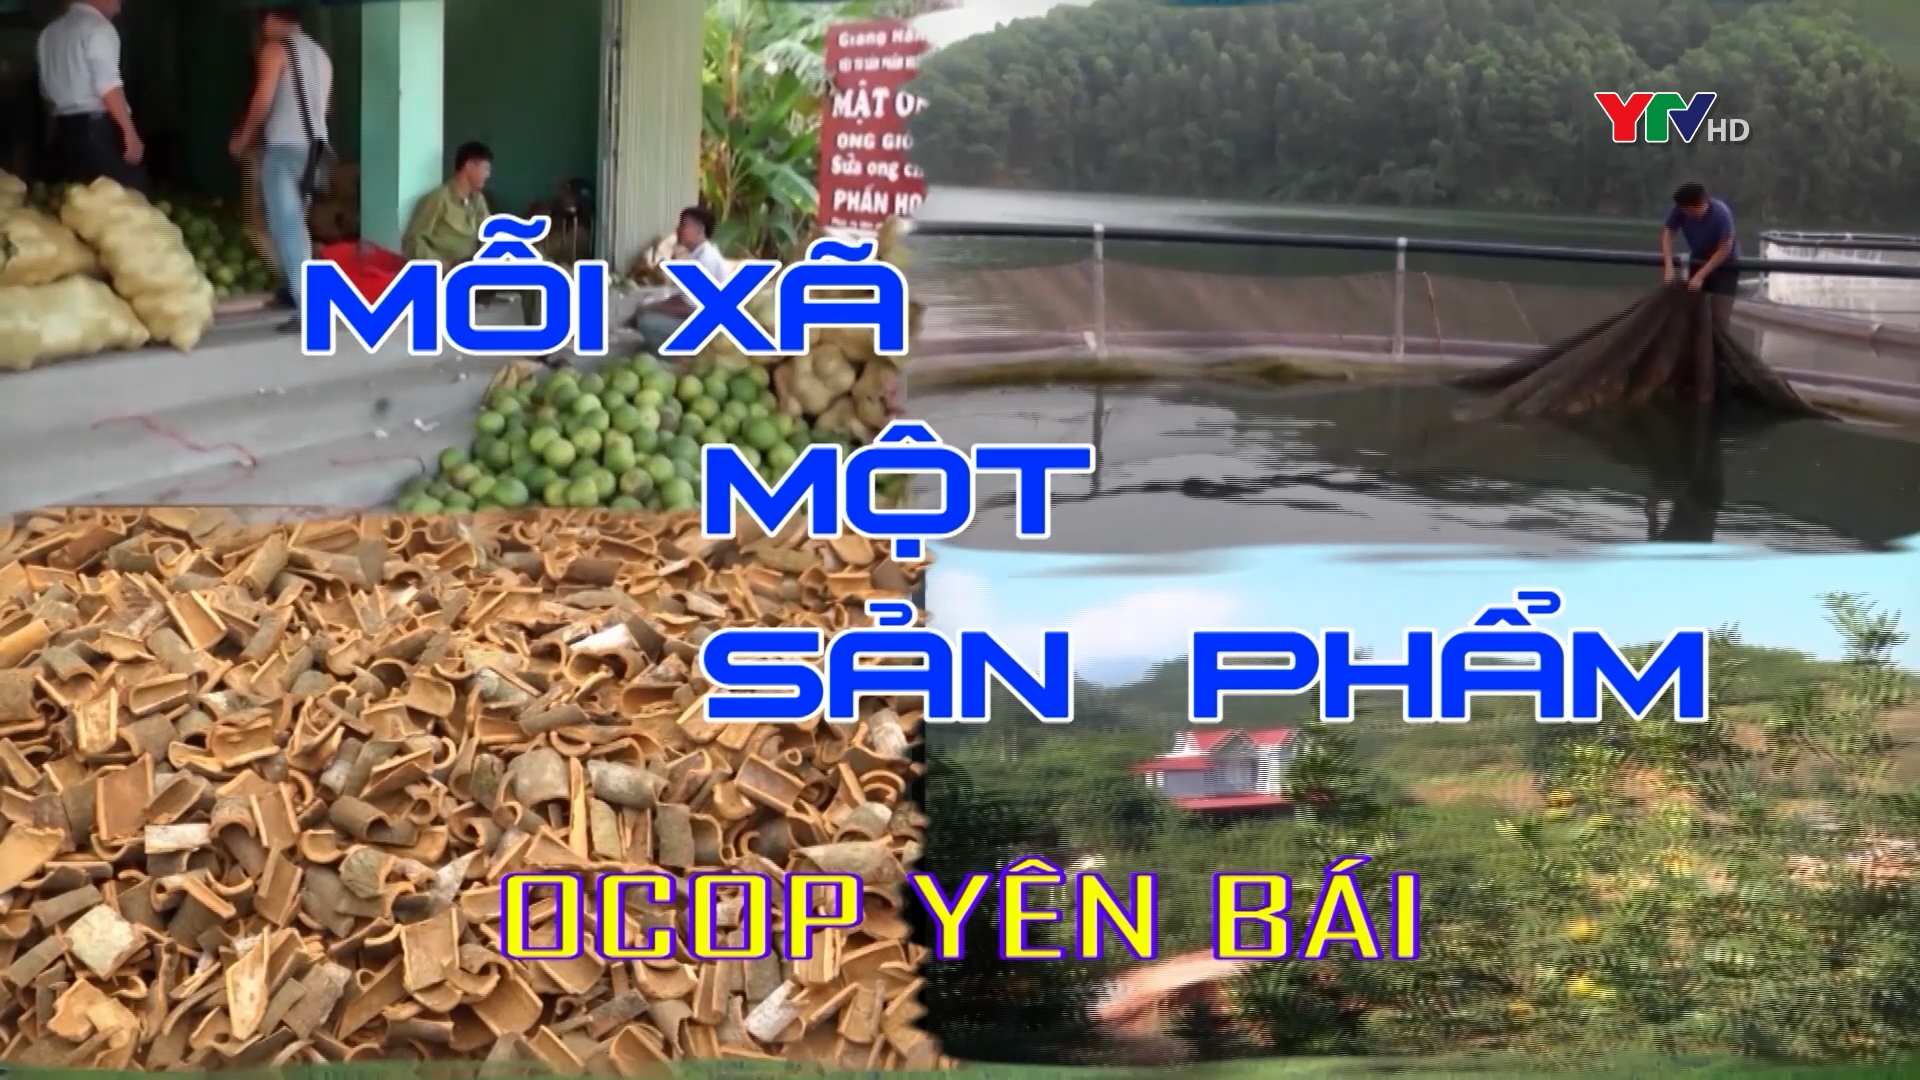 Du lịch hồ Thác Bà - Sản phẩm OCOP 4 sao của huyện Yên Bình